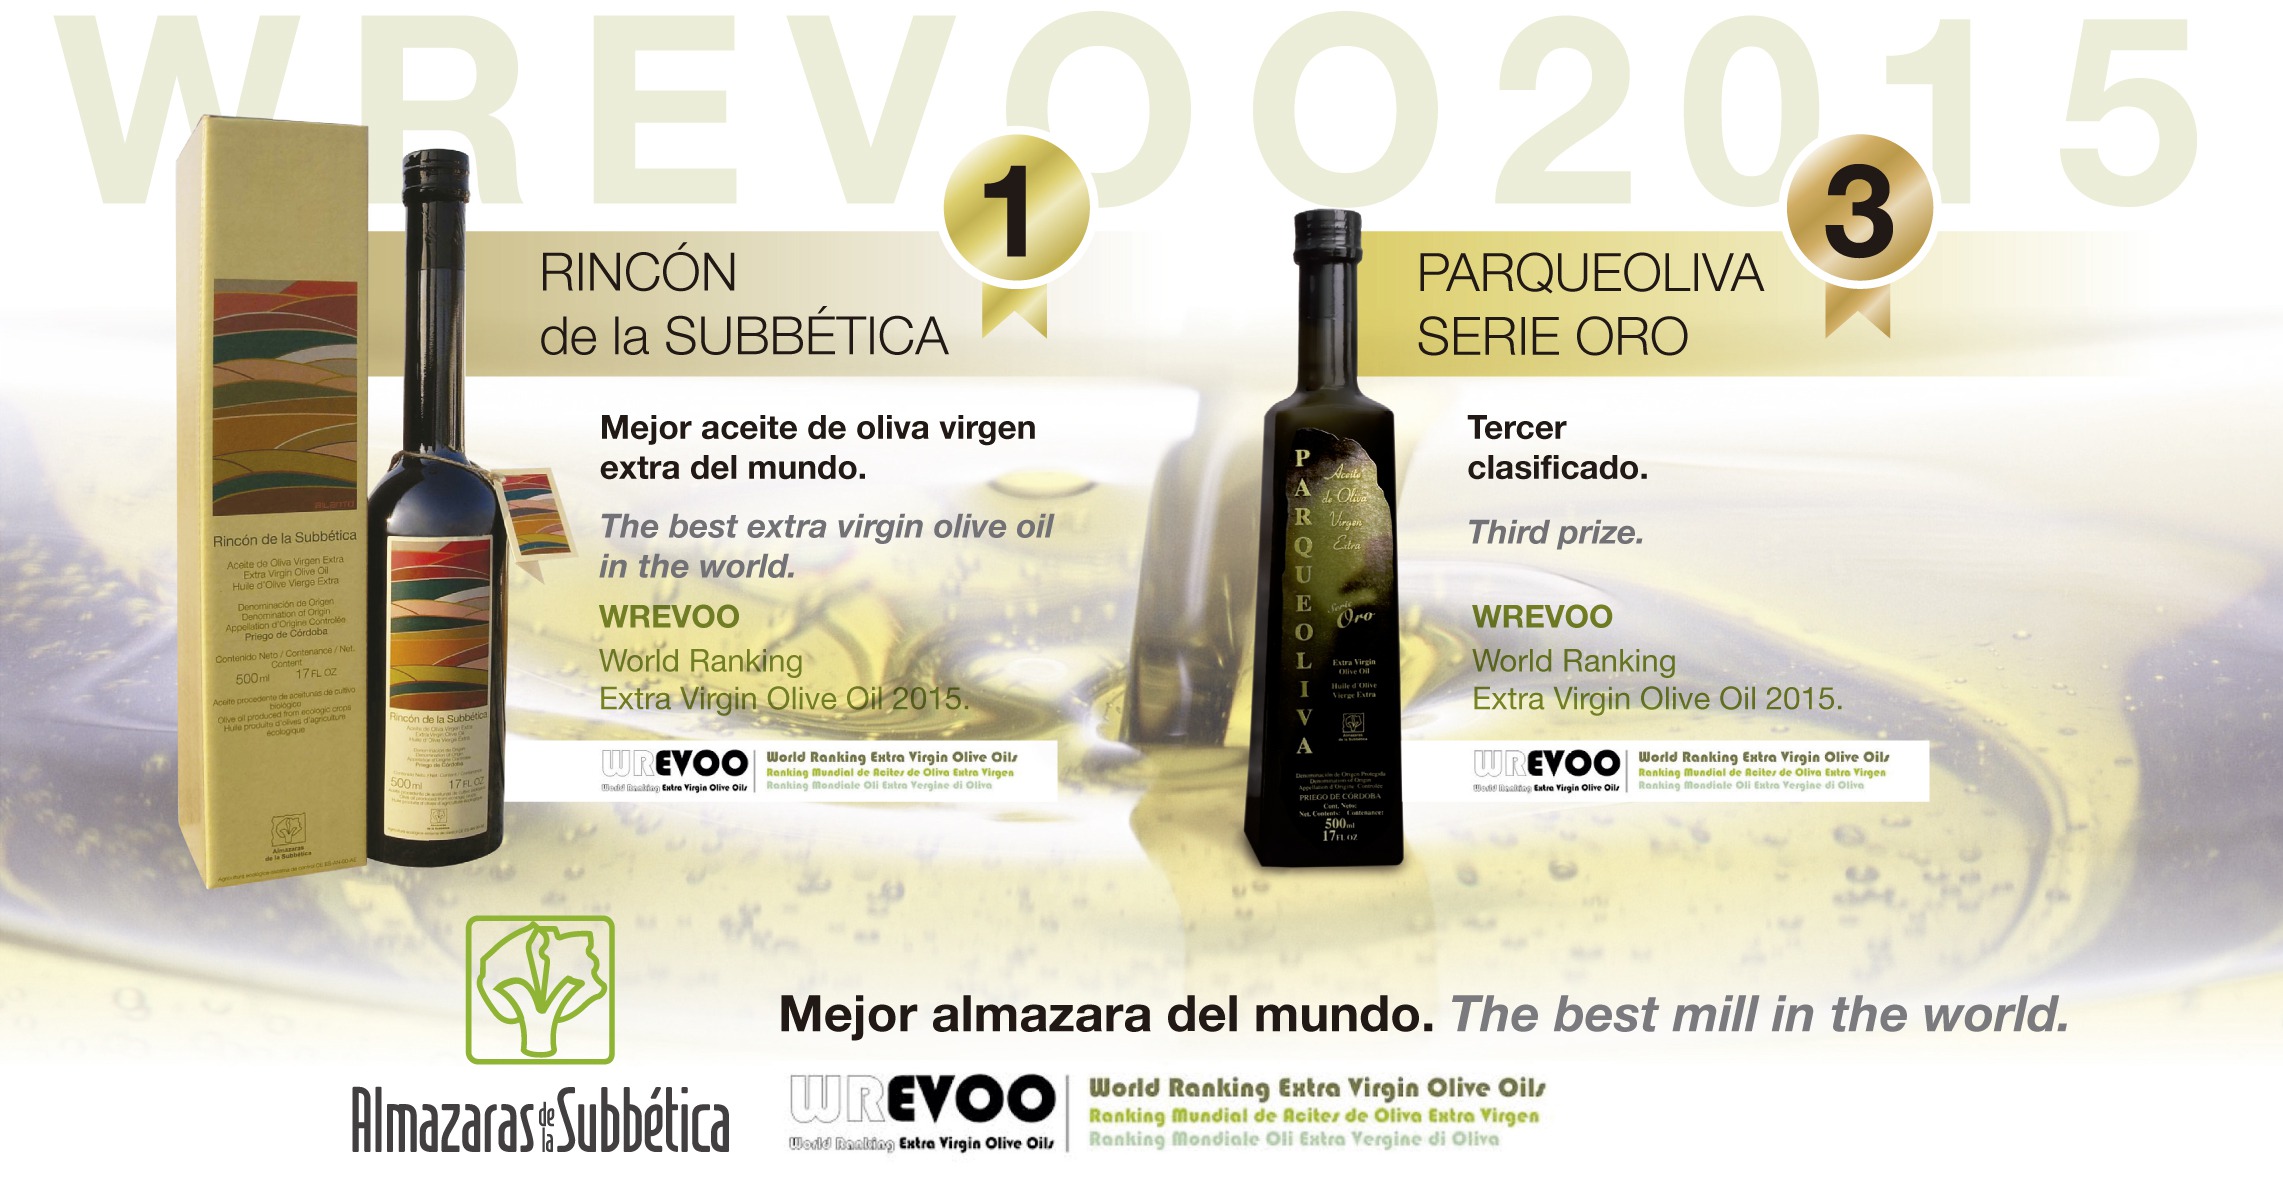 Premio mejor almazara y mejor aceite de oliva virgen extra del mundo 2015